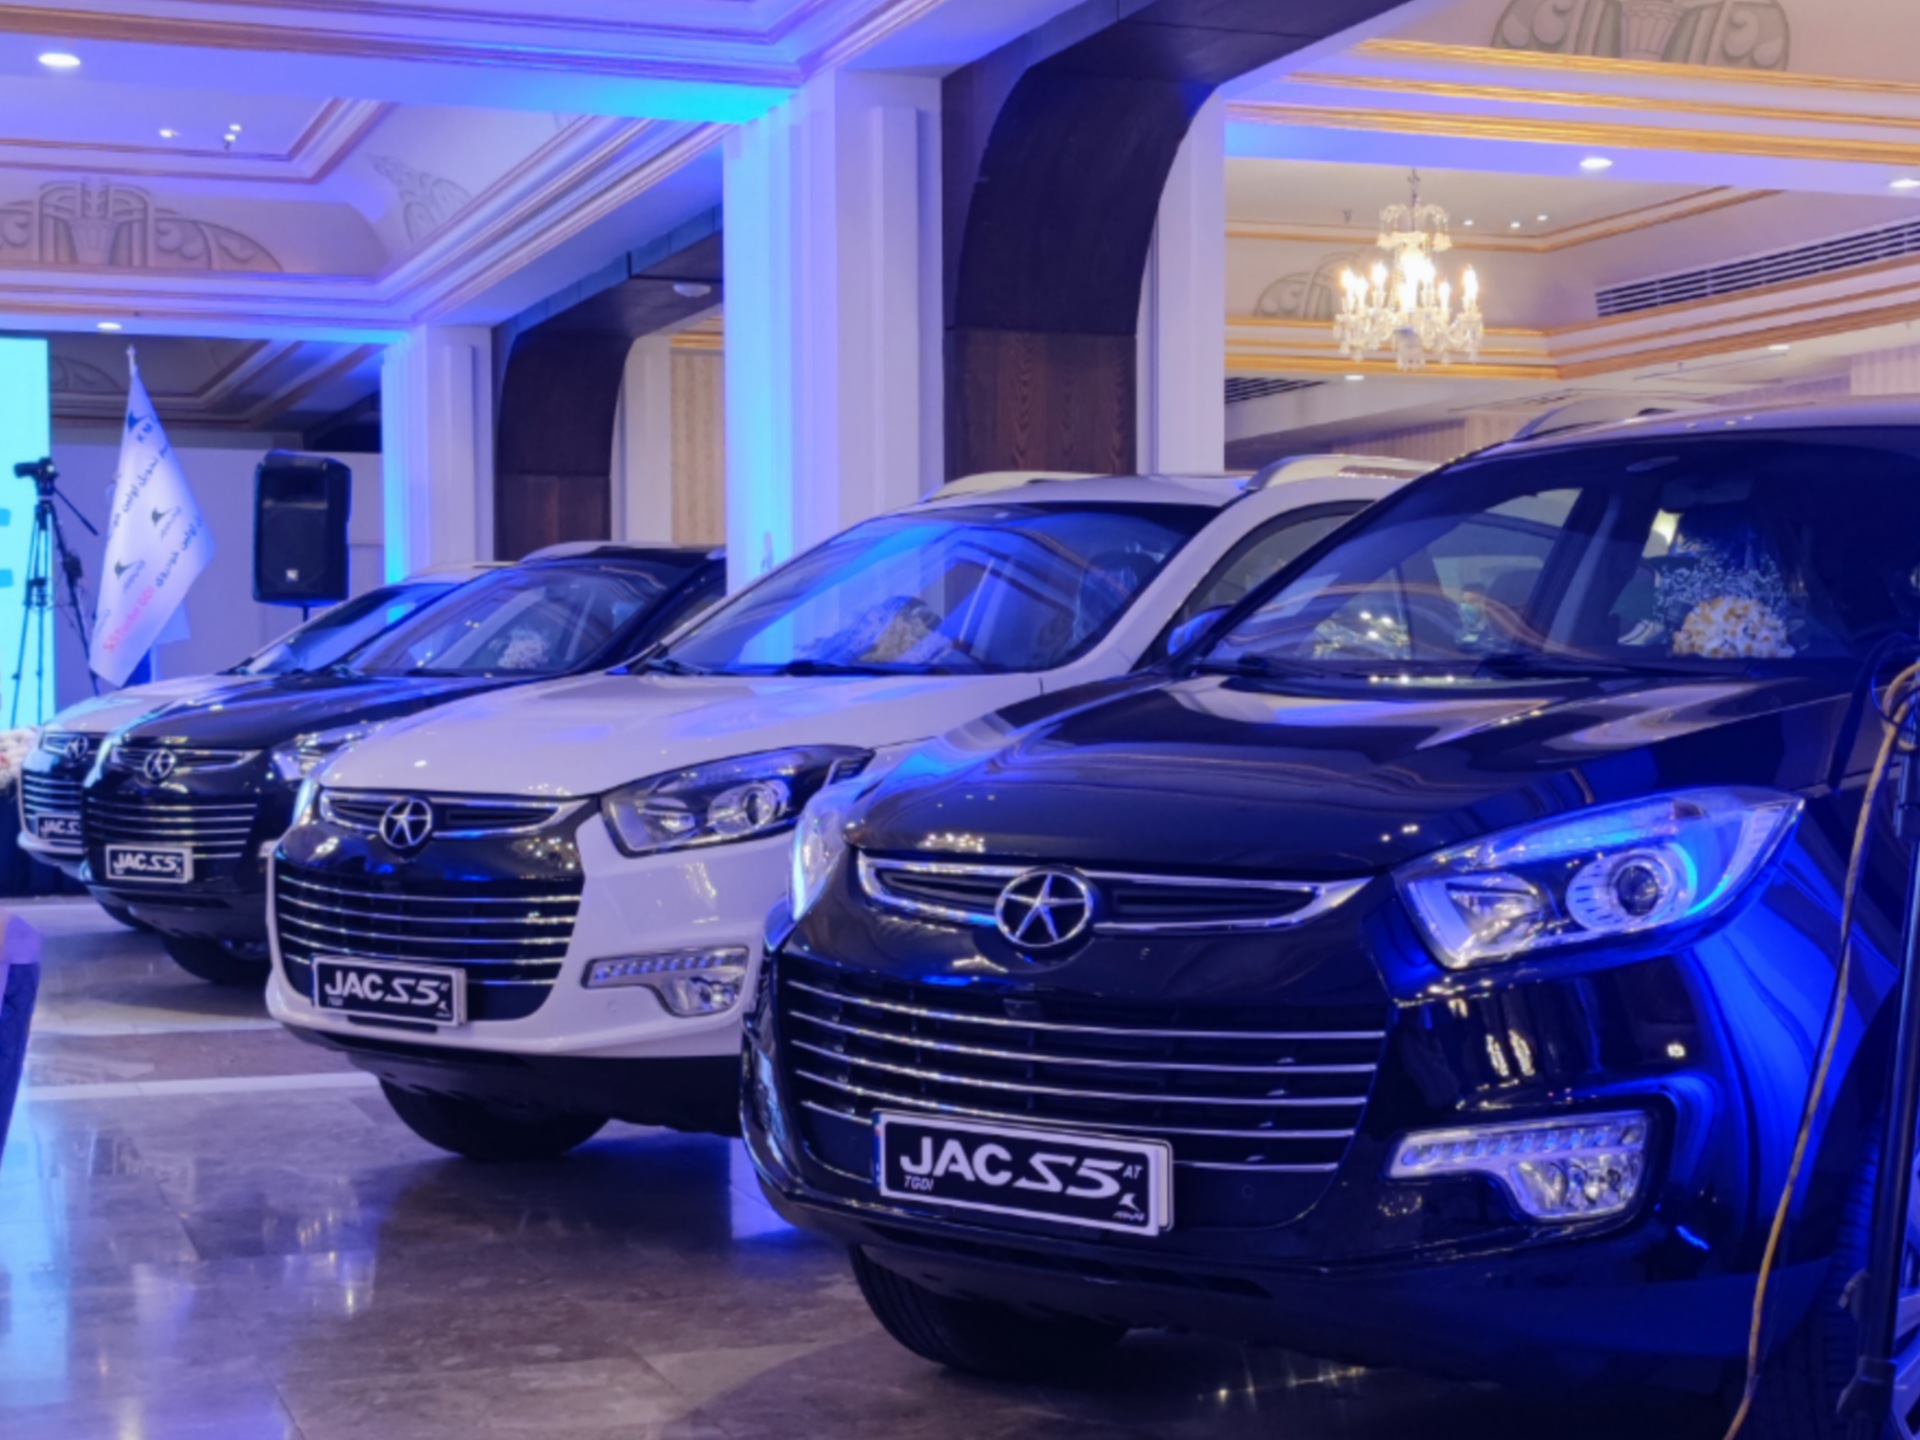 مراسم تحویل اولین خودروهای جک S5 TGDI کرمان موتور در هتل اسپیناس پالاس برگزار شد.